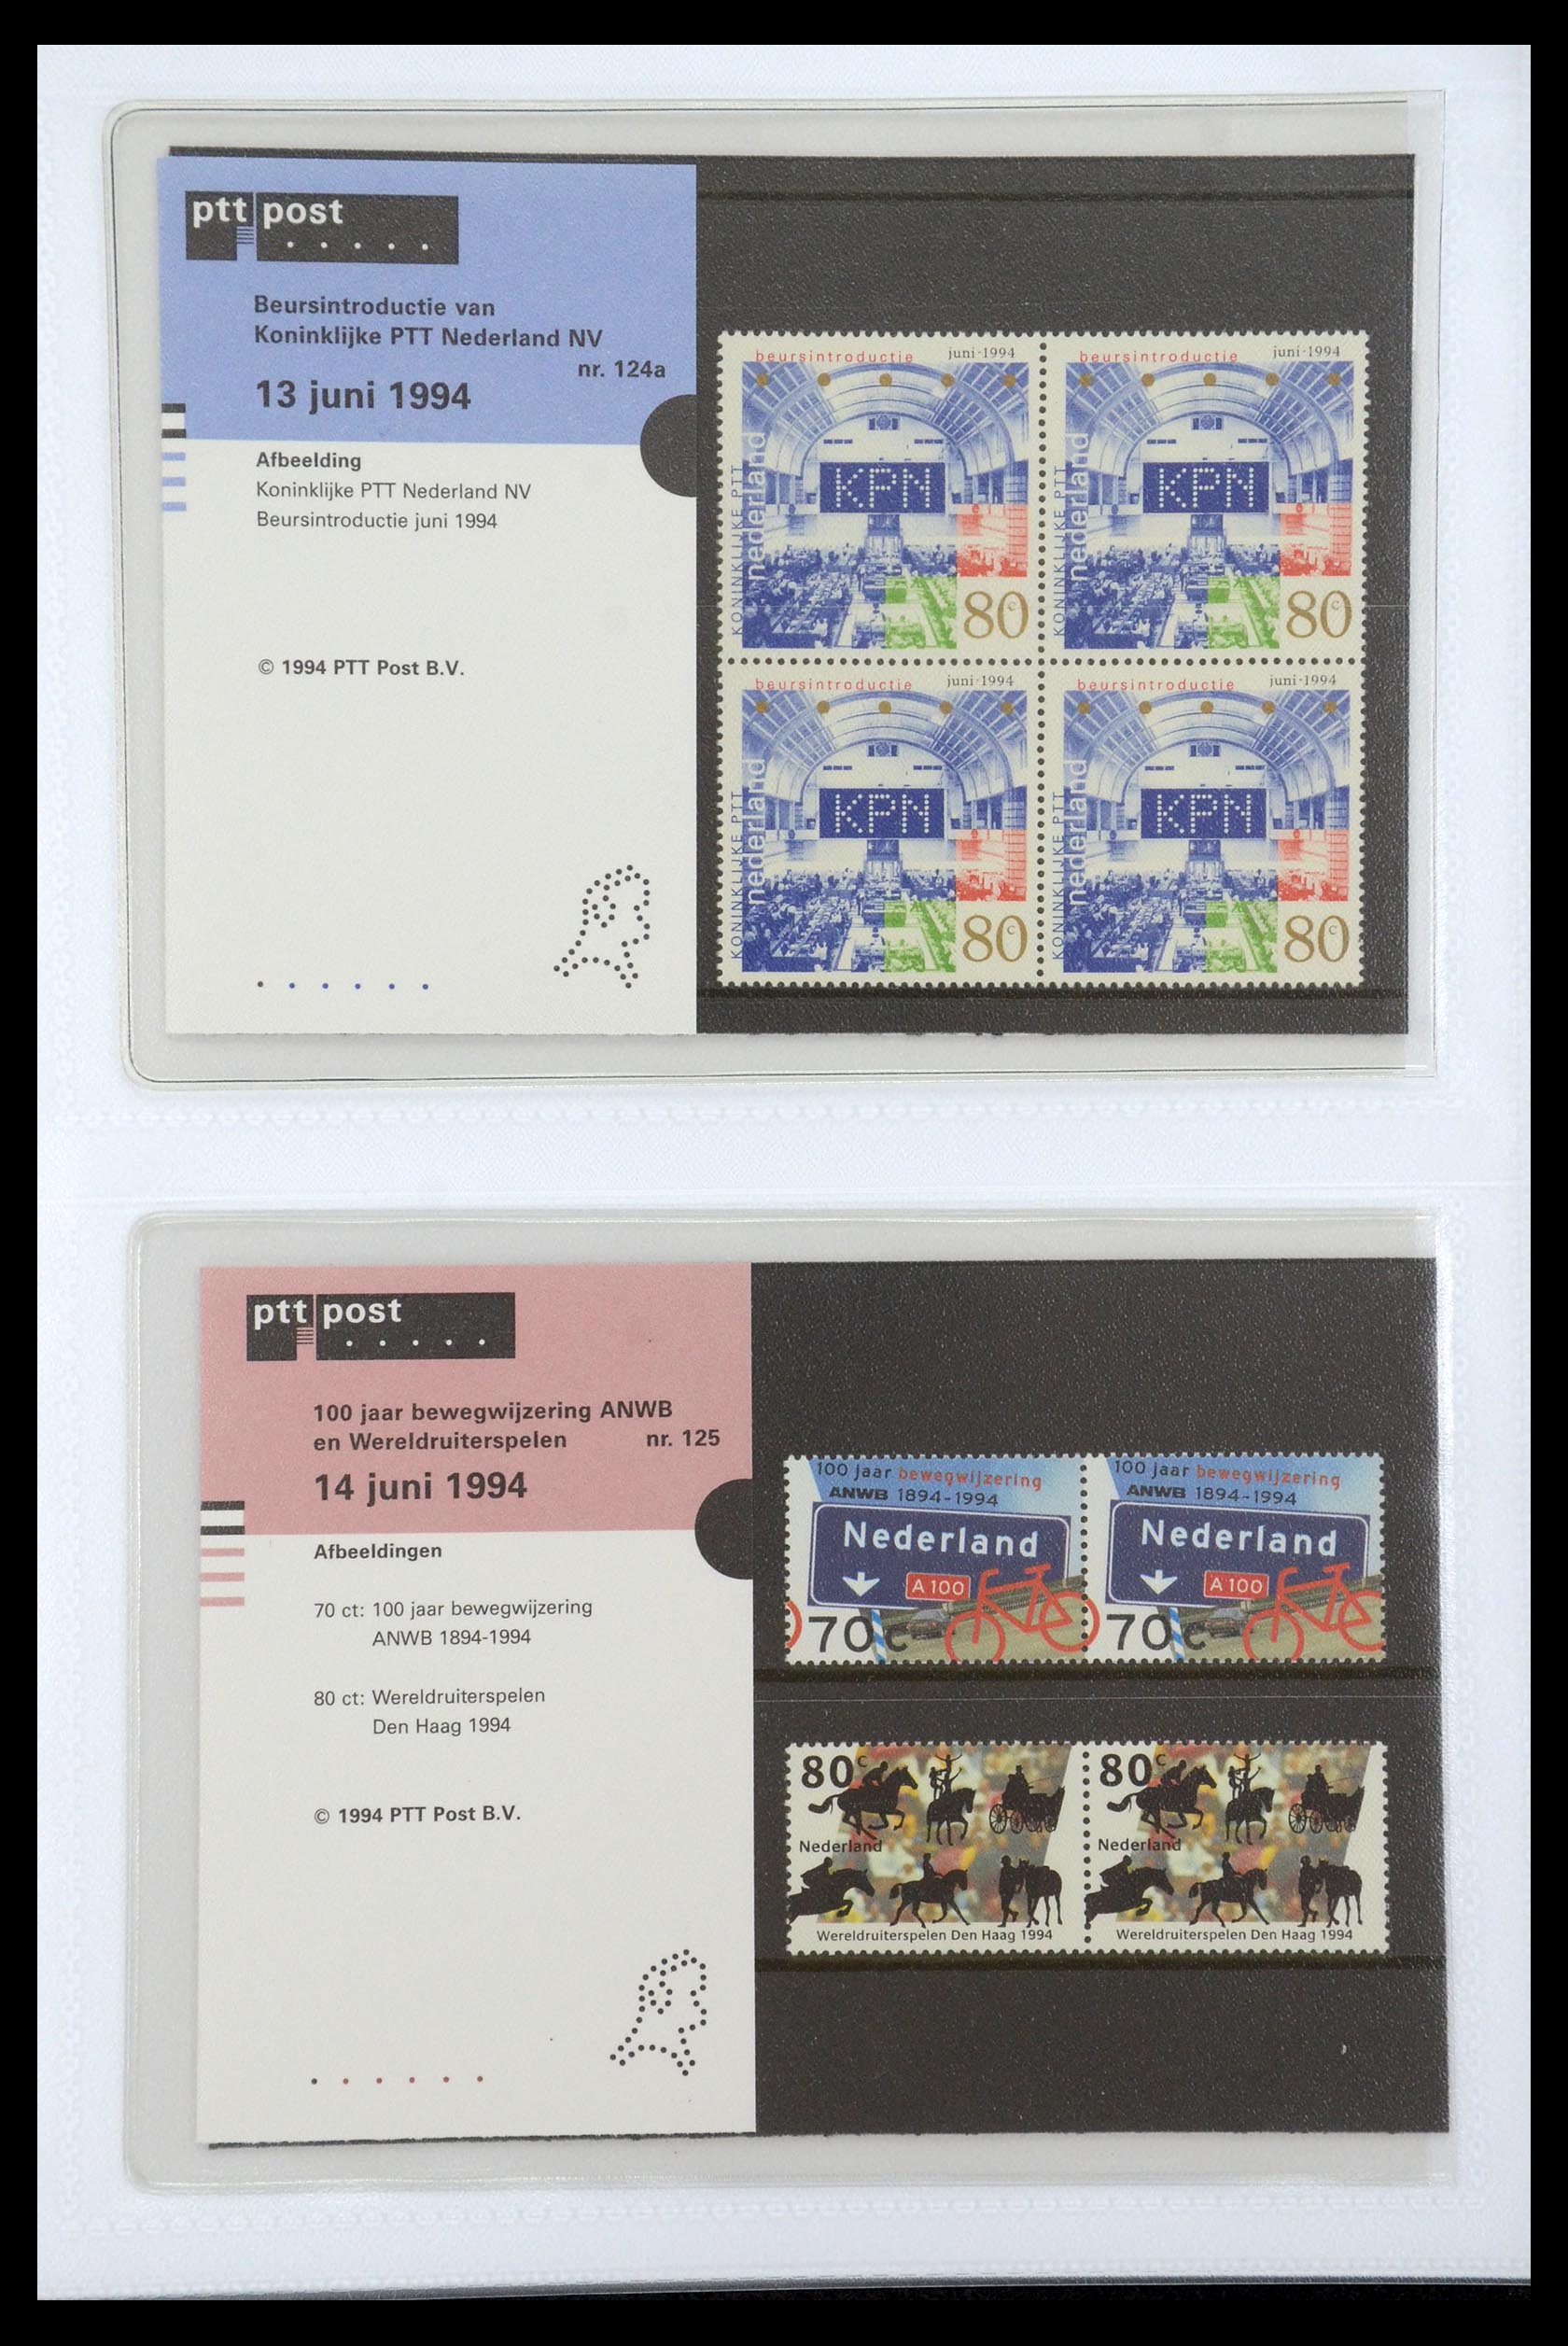 35947 065 - Stamp Collection 35947 Netherlands PTT presentation packs 1982-2019!